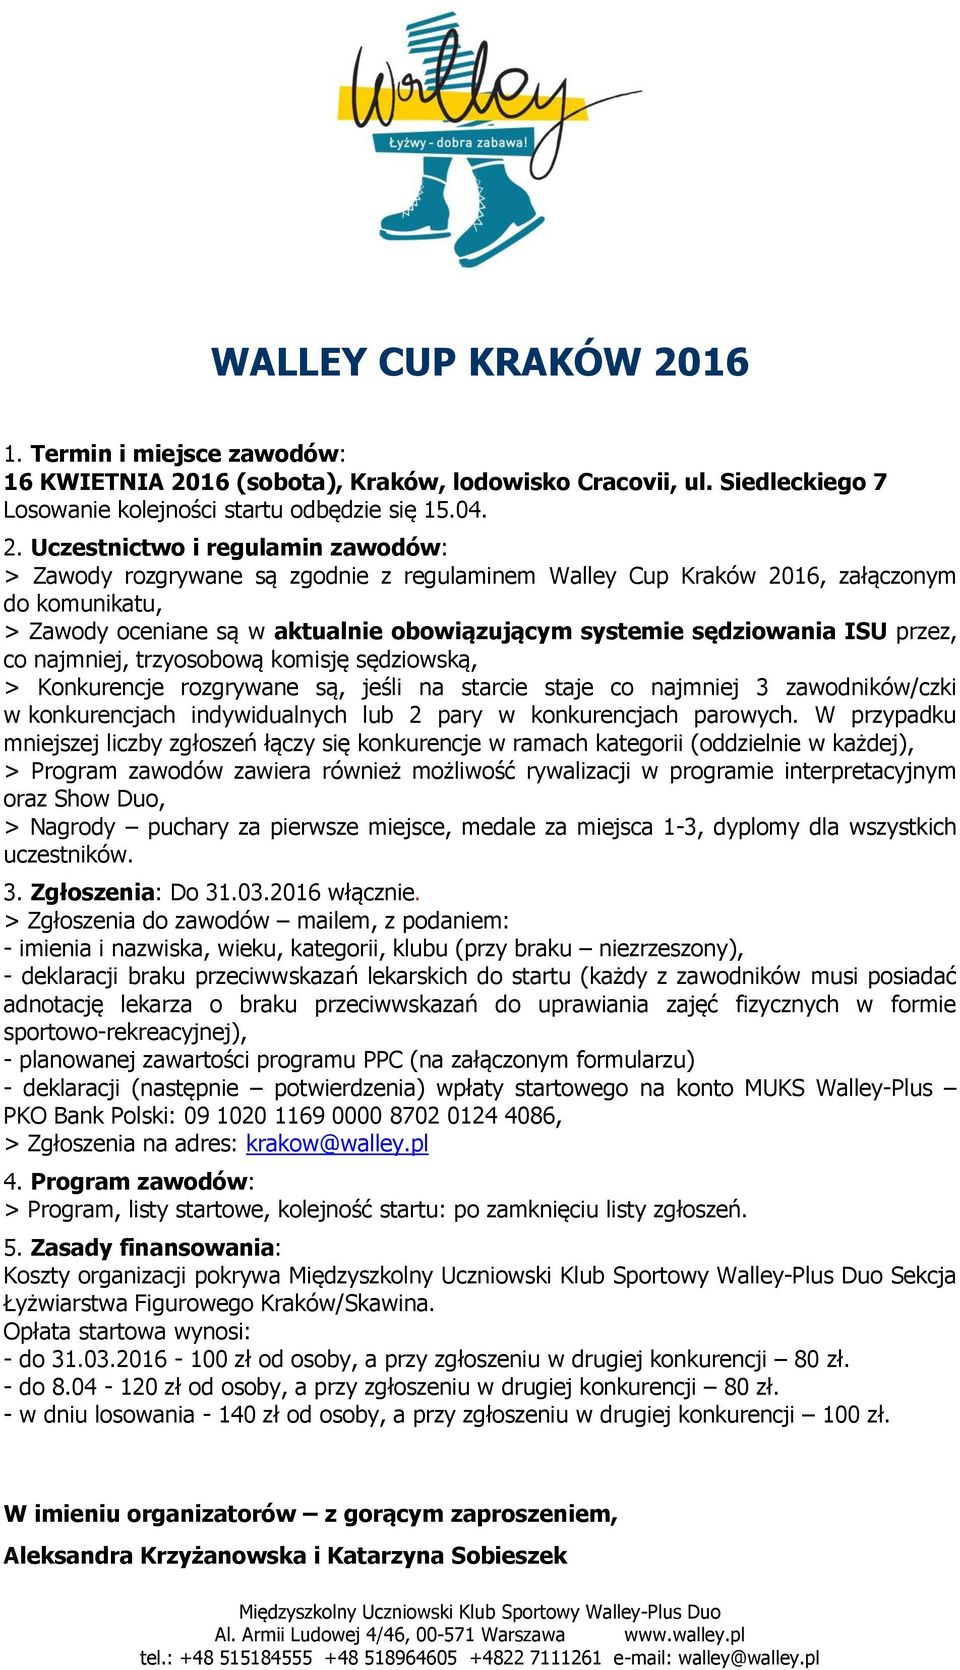 16 (sobota), Kraków, lodowisko Cracovii, ul. Siedleckiego 7 Losowanie kolejności startu odbędzie się 15.04. 2.